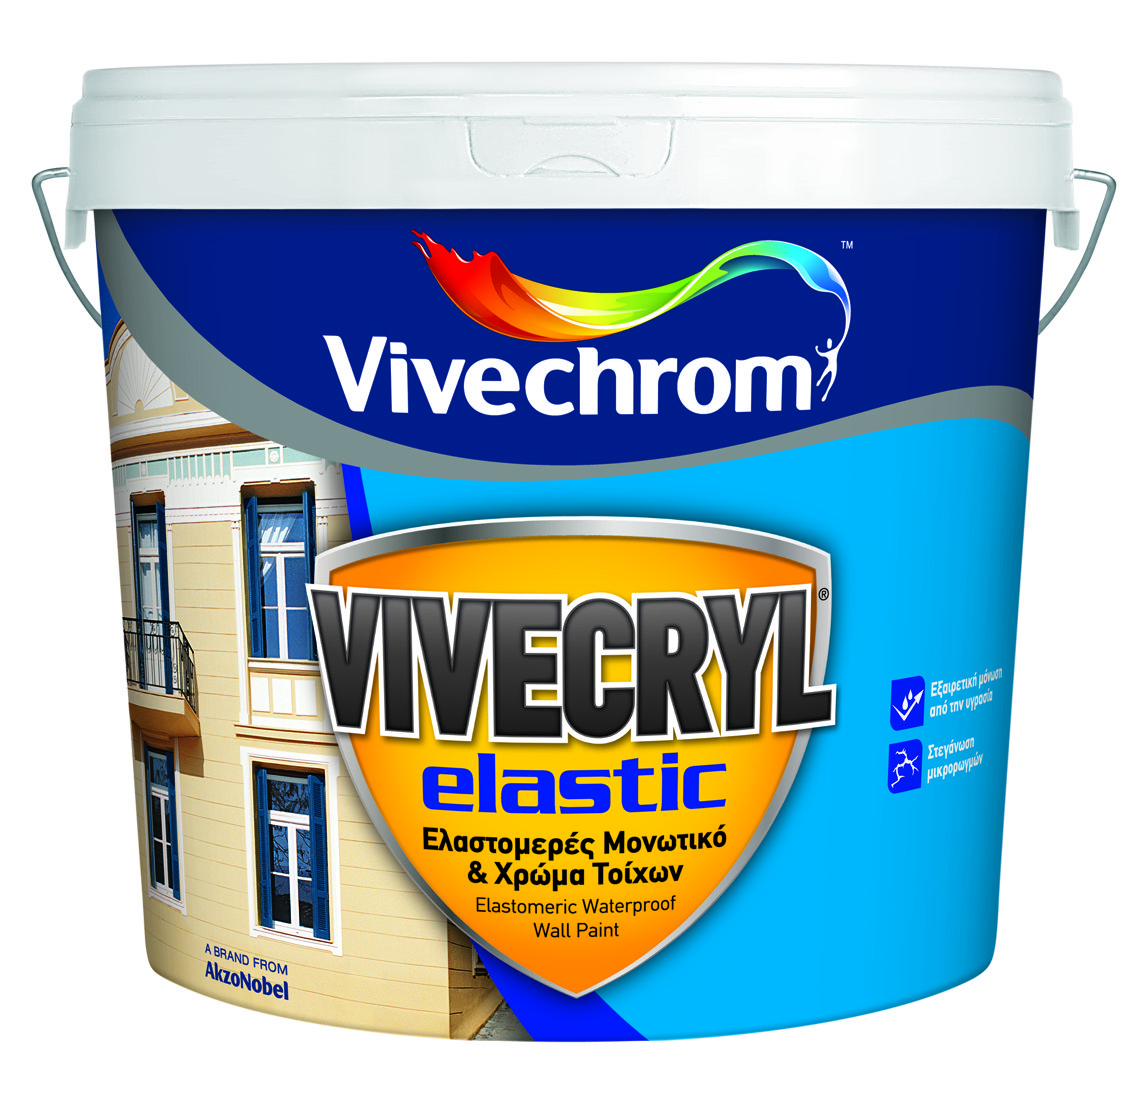 Vivechrom Vivecryl Elastic Matt Finish White 3L